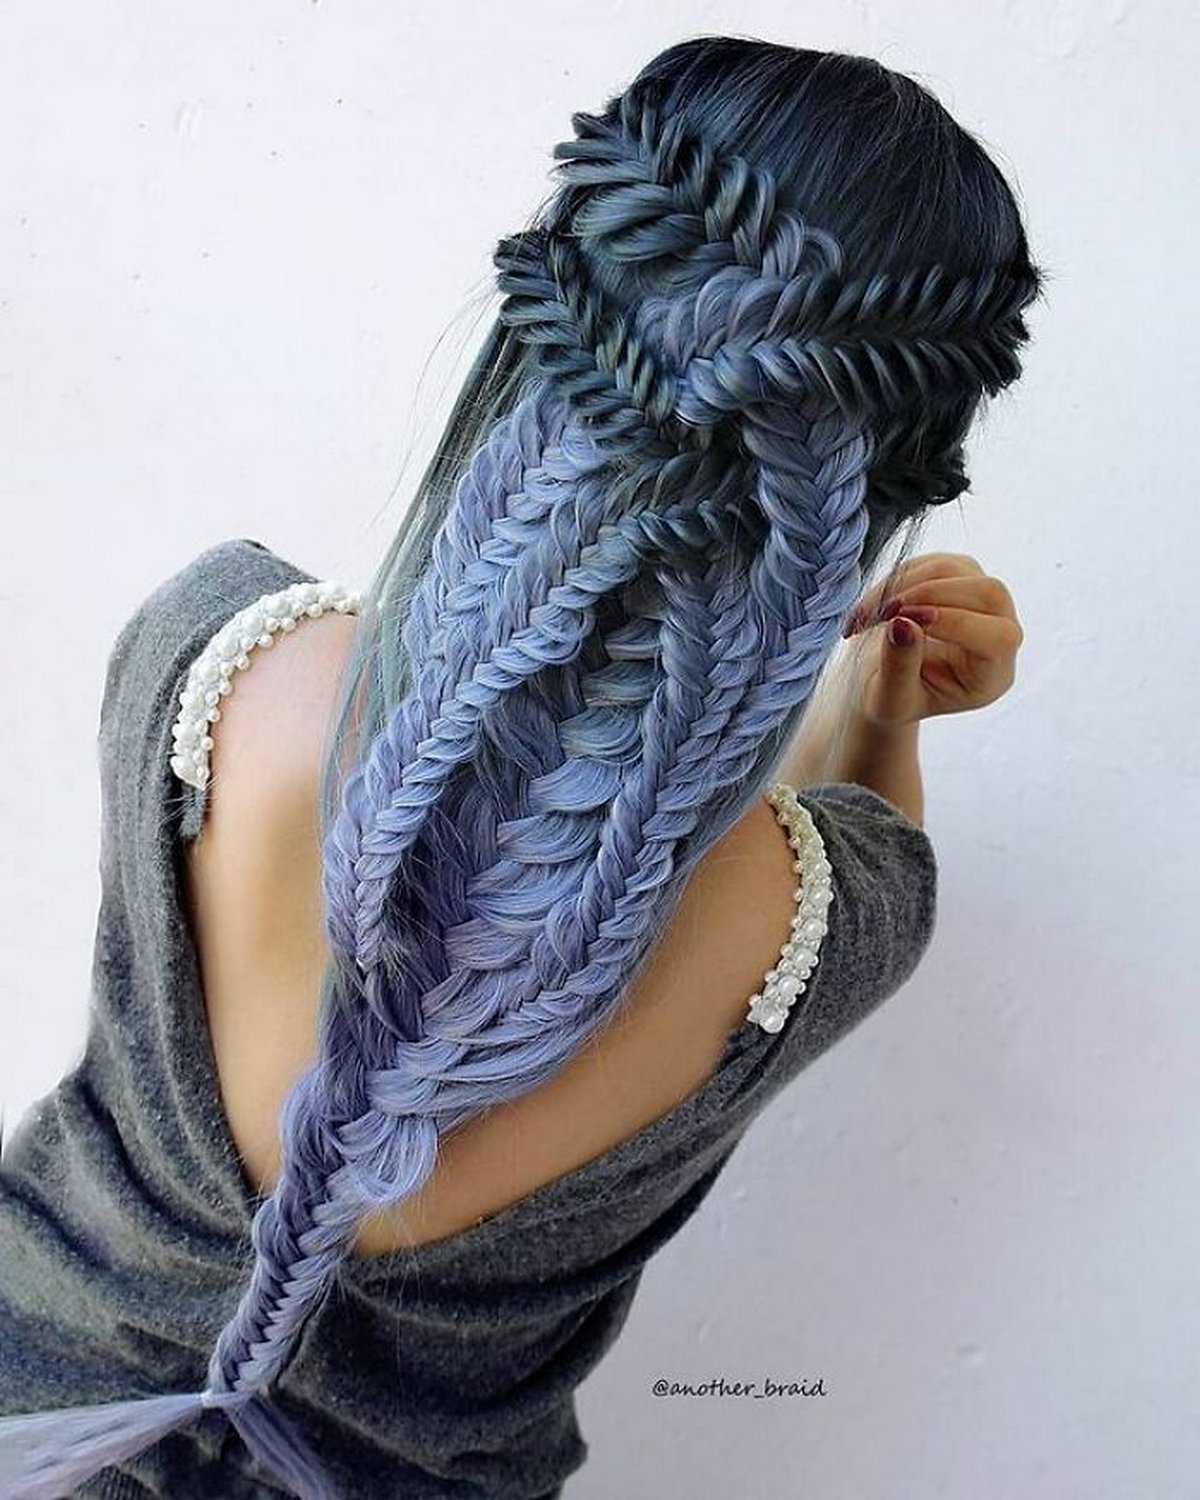 Ces coiffures à tresses fascinantes ont été créées par une artiste macédonienne autodidacte